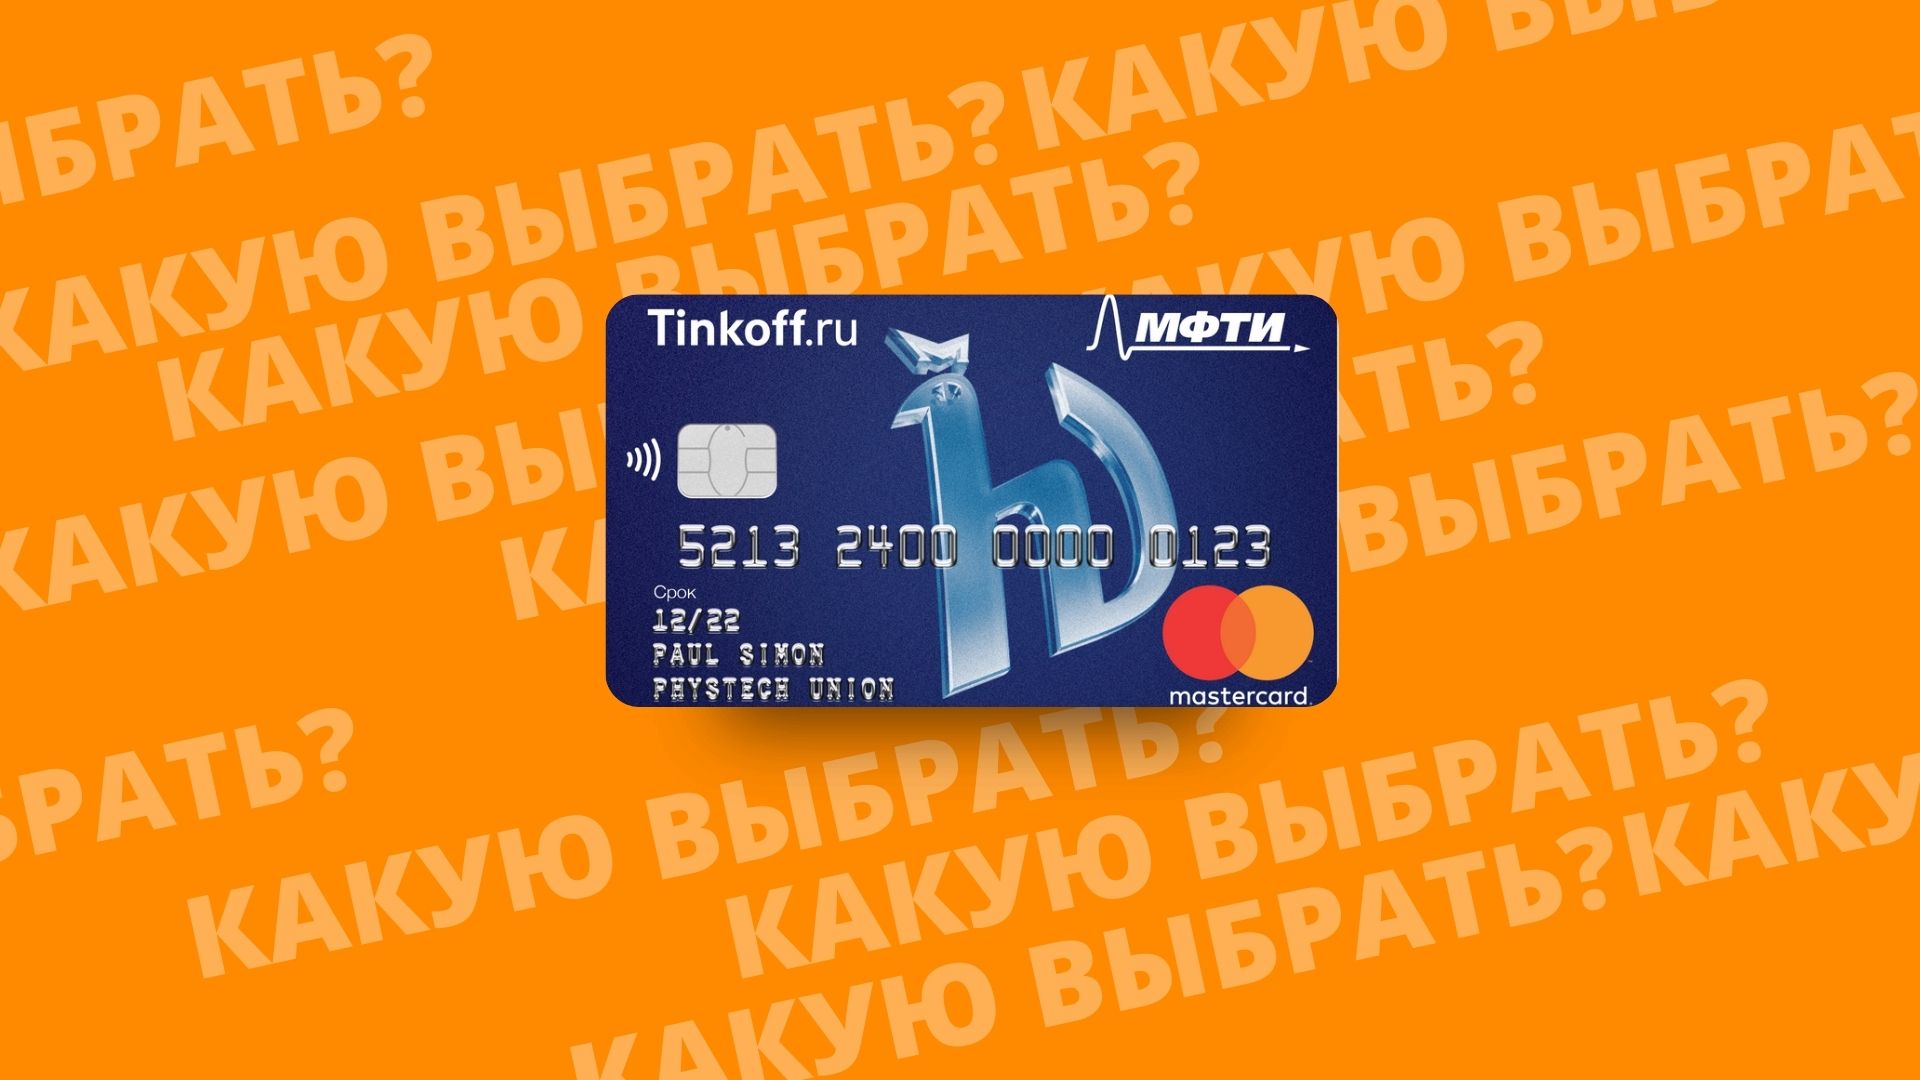 Физтехсоюз МФТИ дебетовая карта банка Тинькофф. Почему стоит выбрать